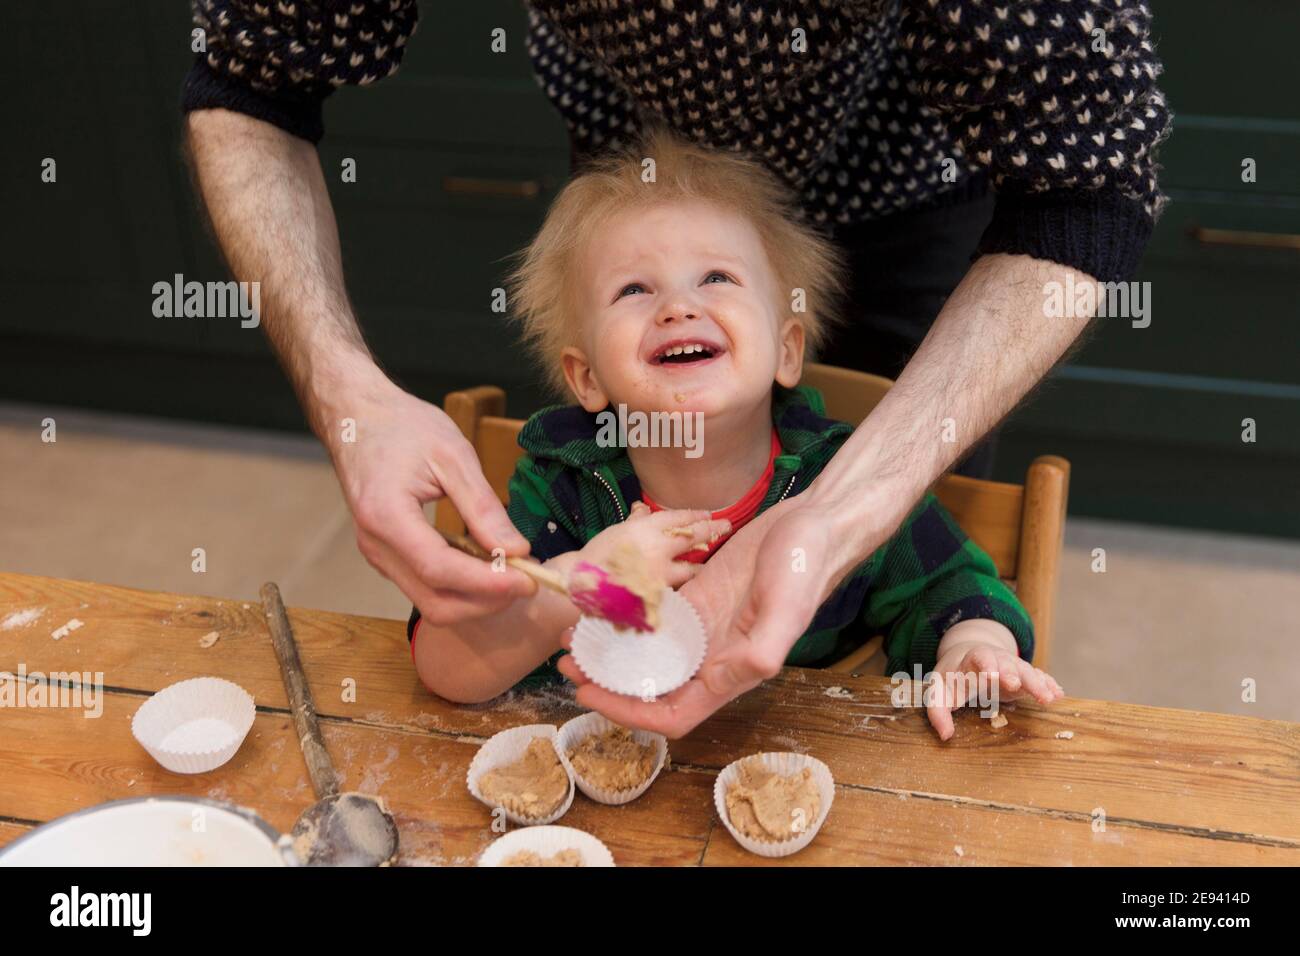 Un jeune enfant qui s'amuse à aider son père à cuire des gâteaux dans la cuisine. Banque D'Images